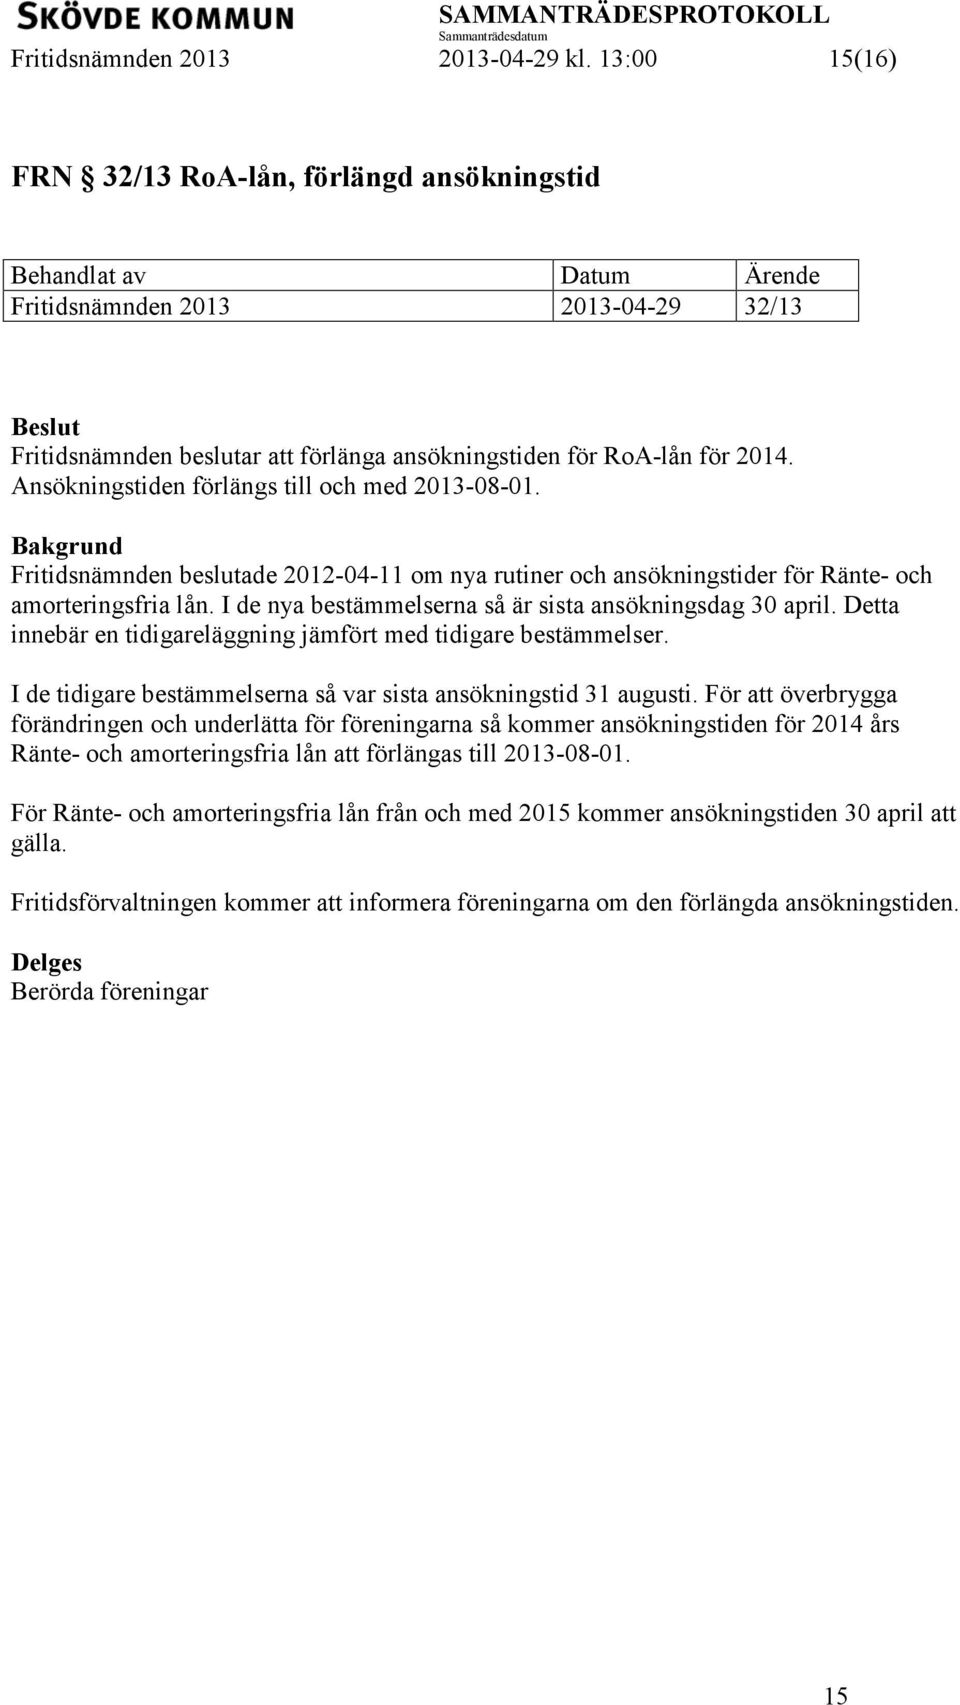 Ansökningstiden förlängs till och med 2013-08-01. Fritidsnämnden beslutade 2012-04-11 om nya rutiner och ansökningstider för Ränte- och amorteringsfria lån.